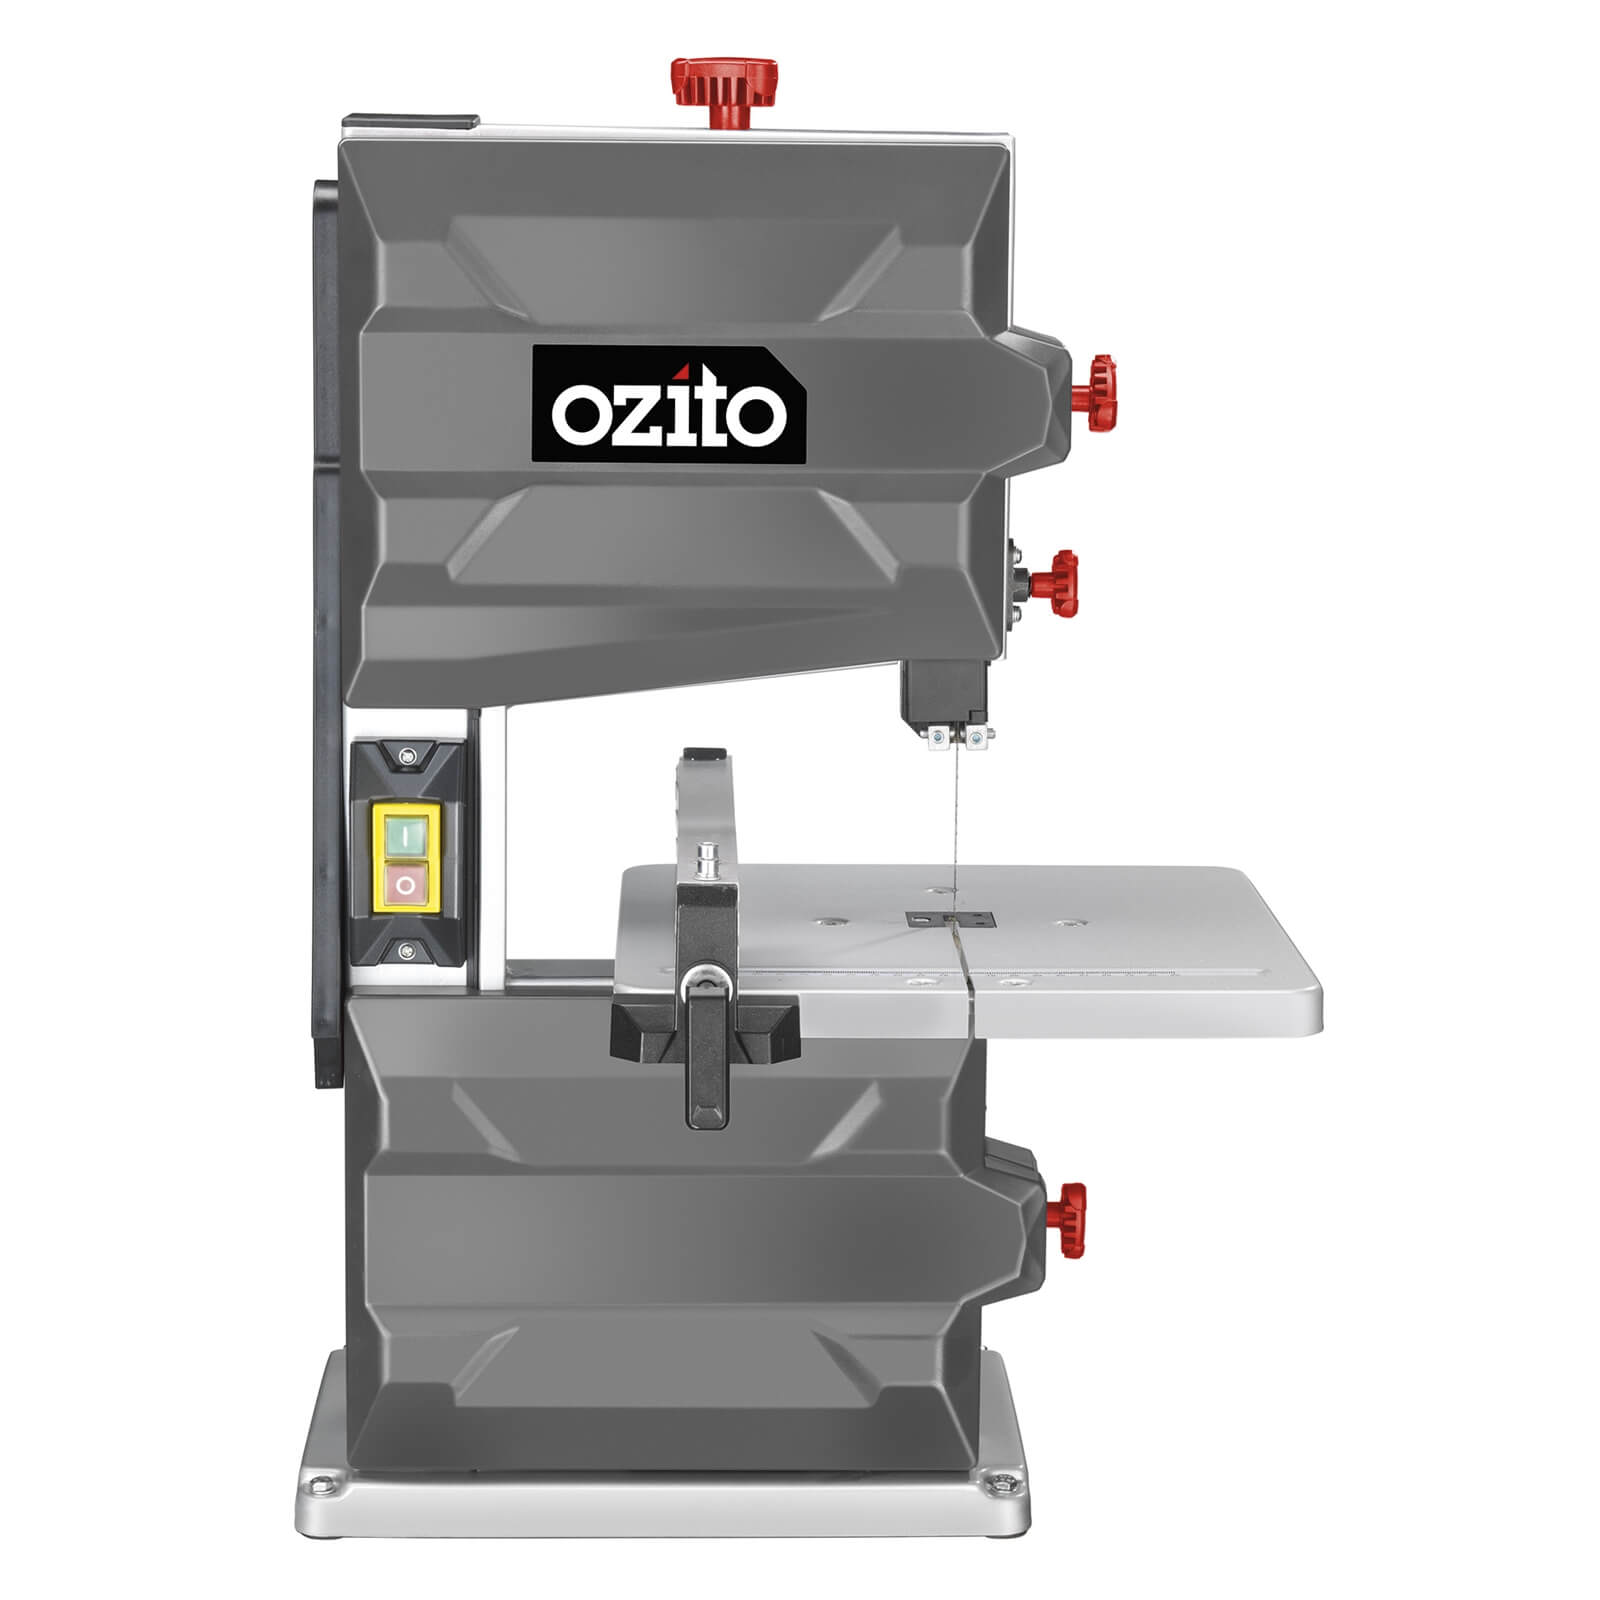 Ozito by Einhell 250W 200mm Band Saw